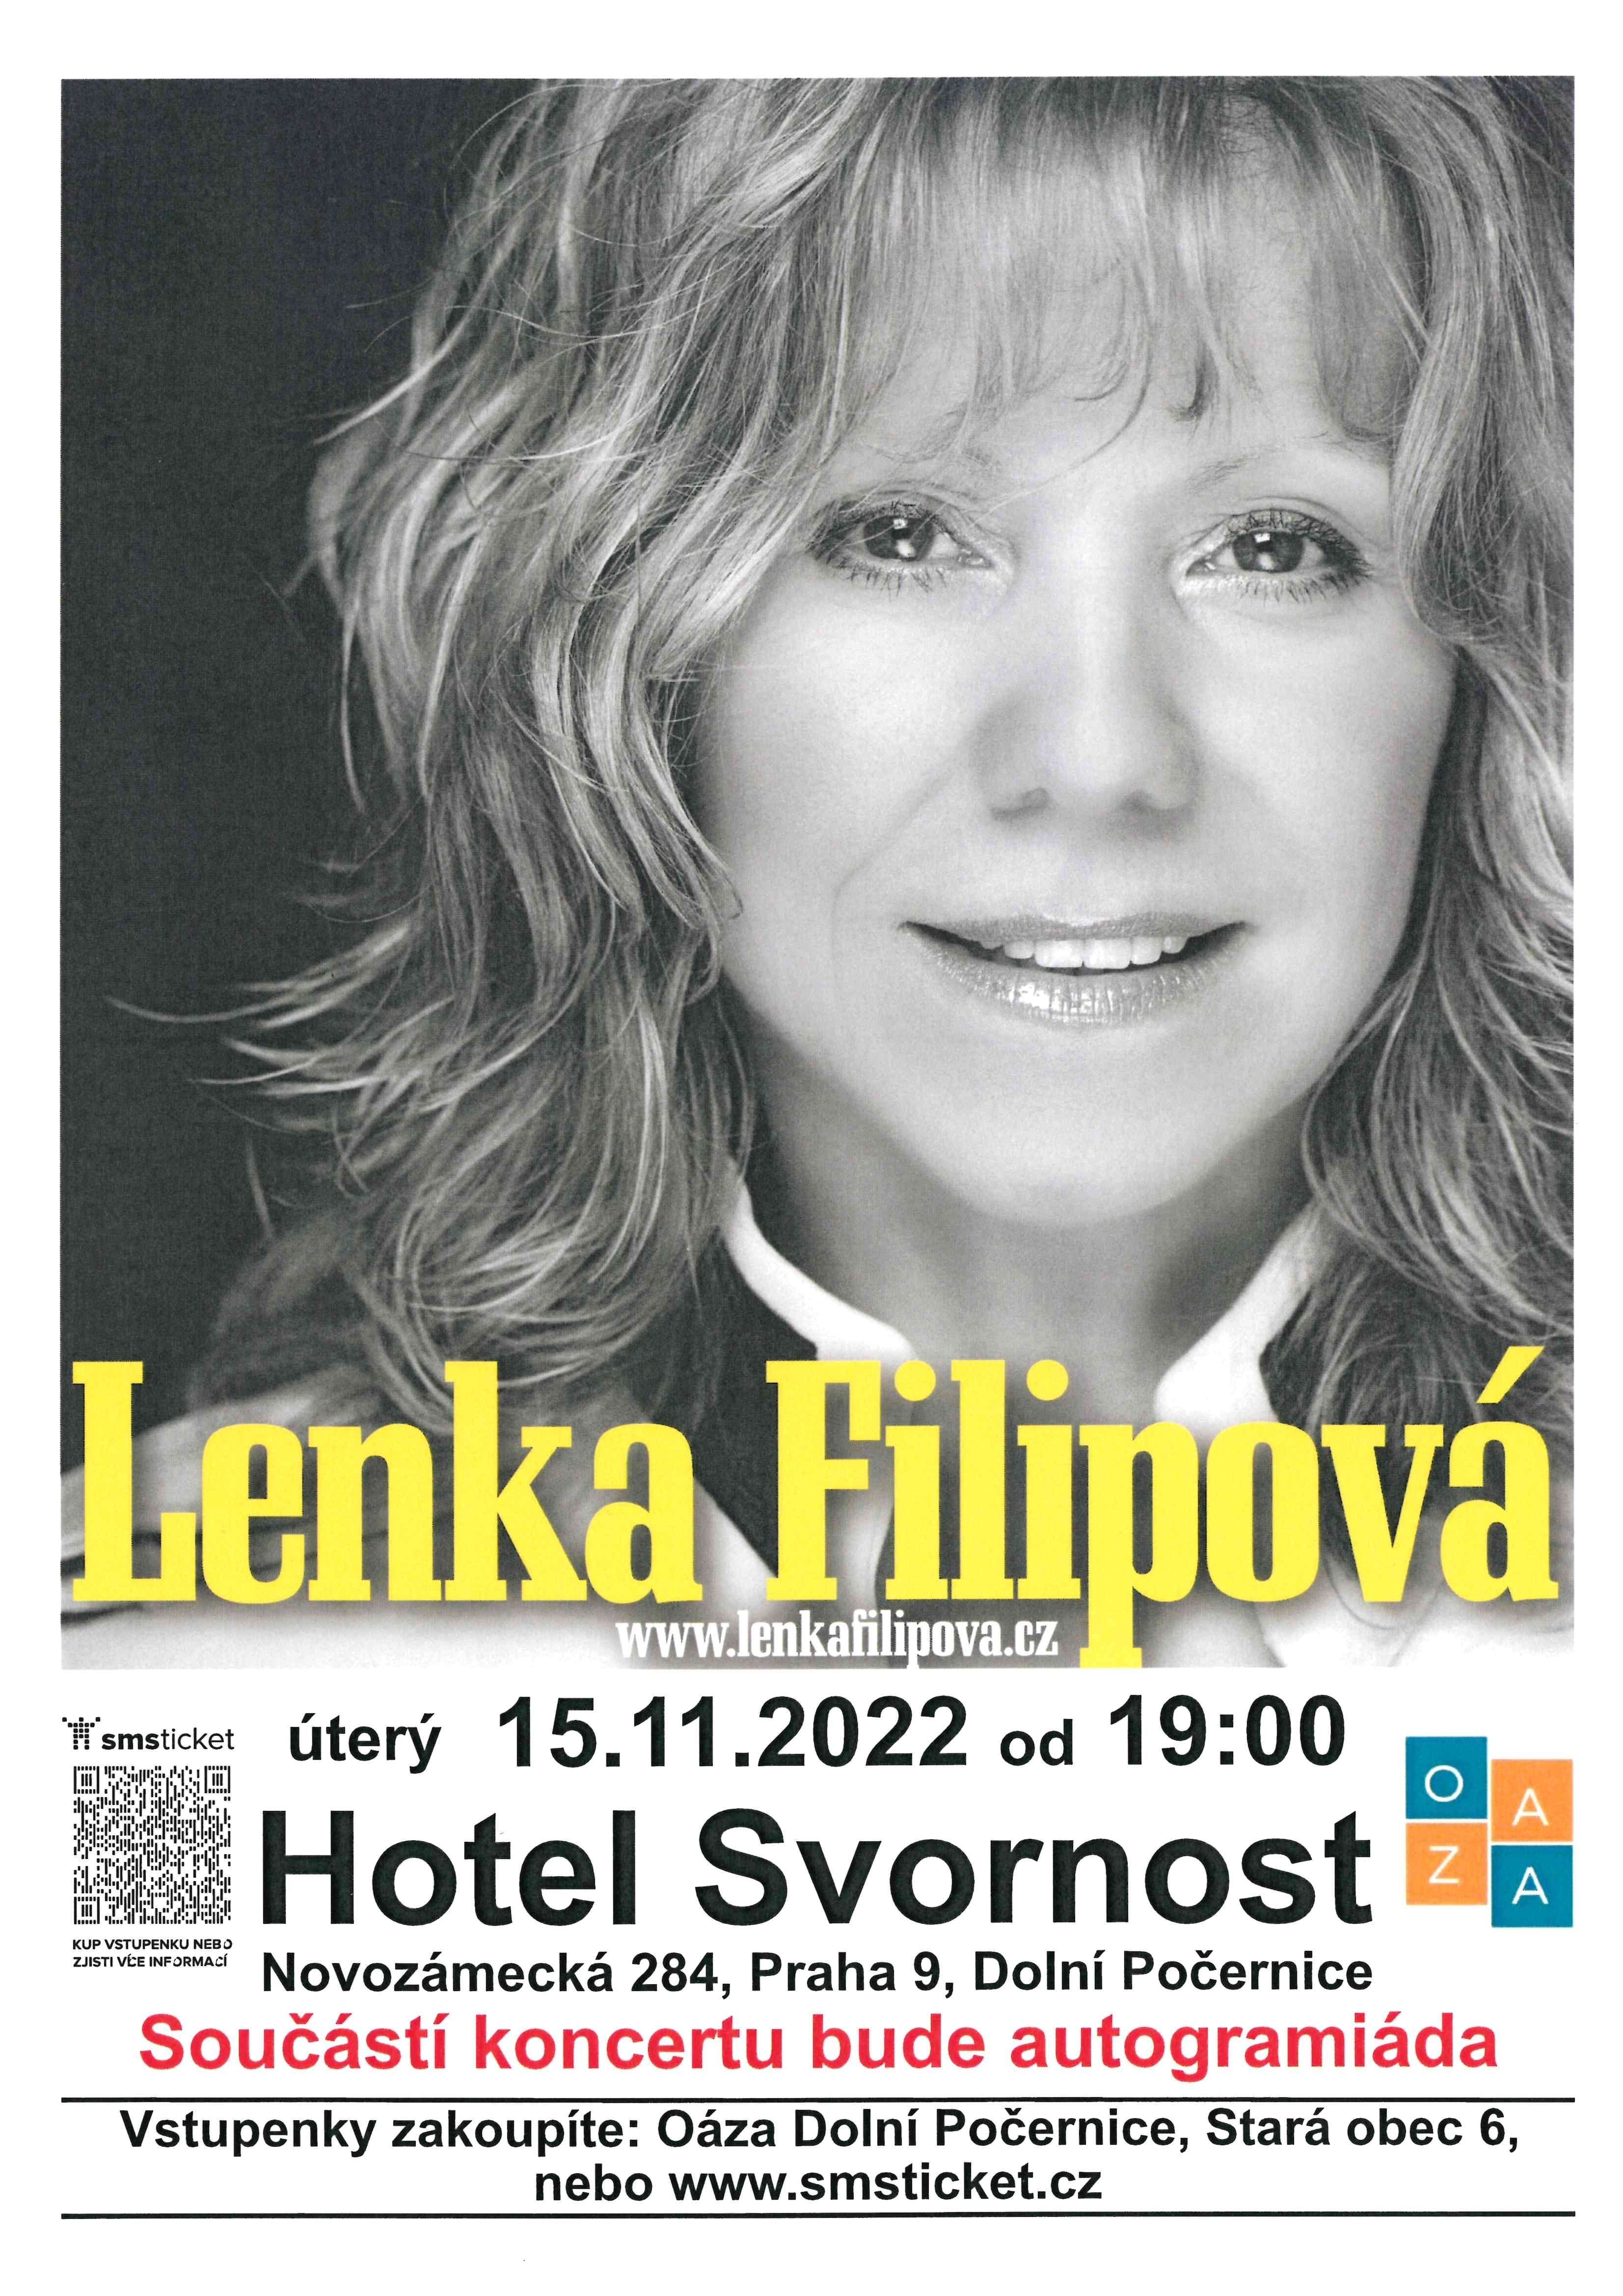 Concert of Lenka Filipová